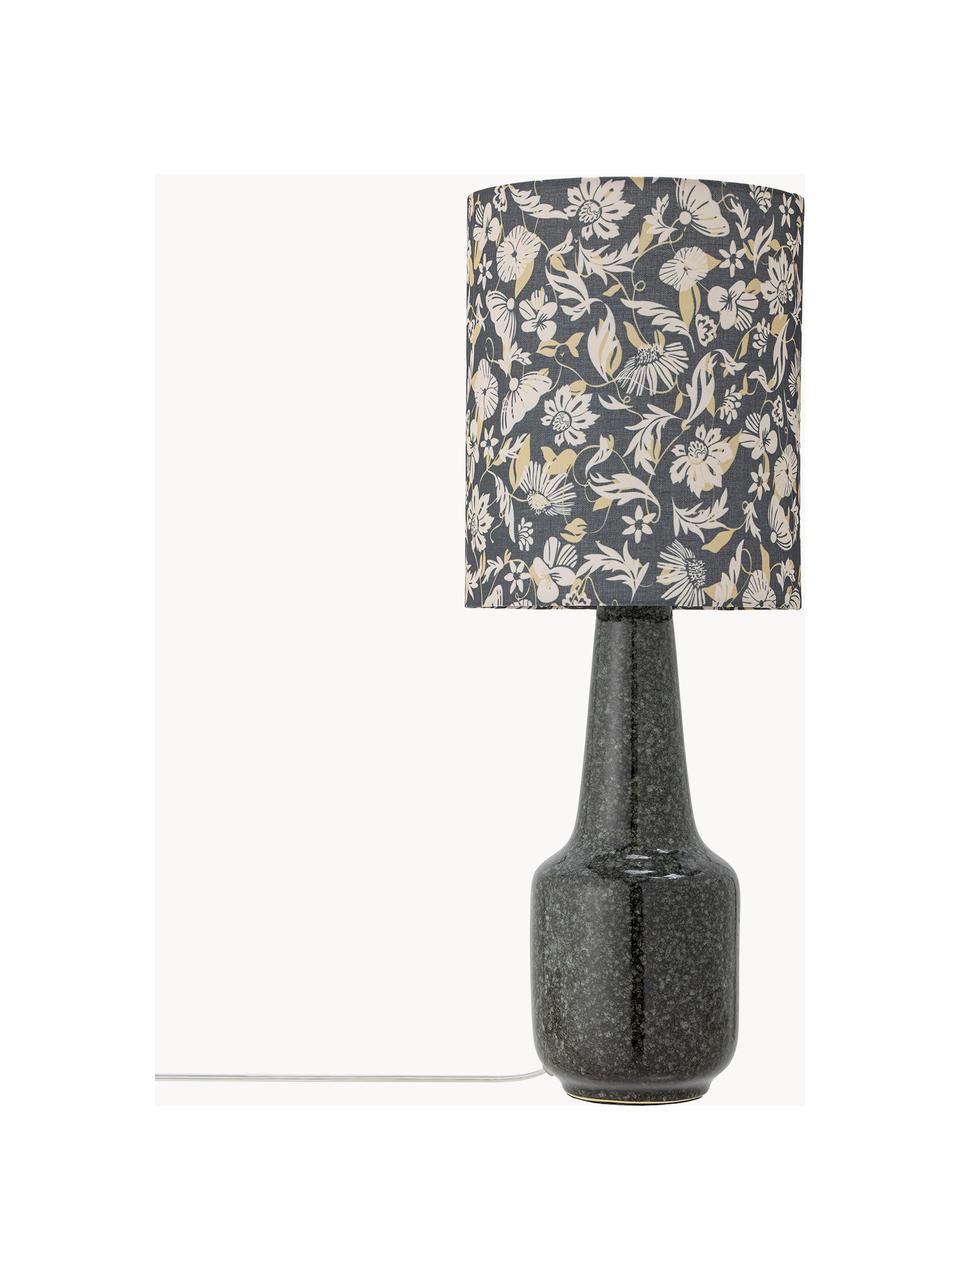 Grosse Tischlampe Olefine mit Blumenmuster, Lampenschirm: Stoff, Grün- und Schwarztöne, Ø 23 x H 62 cm